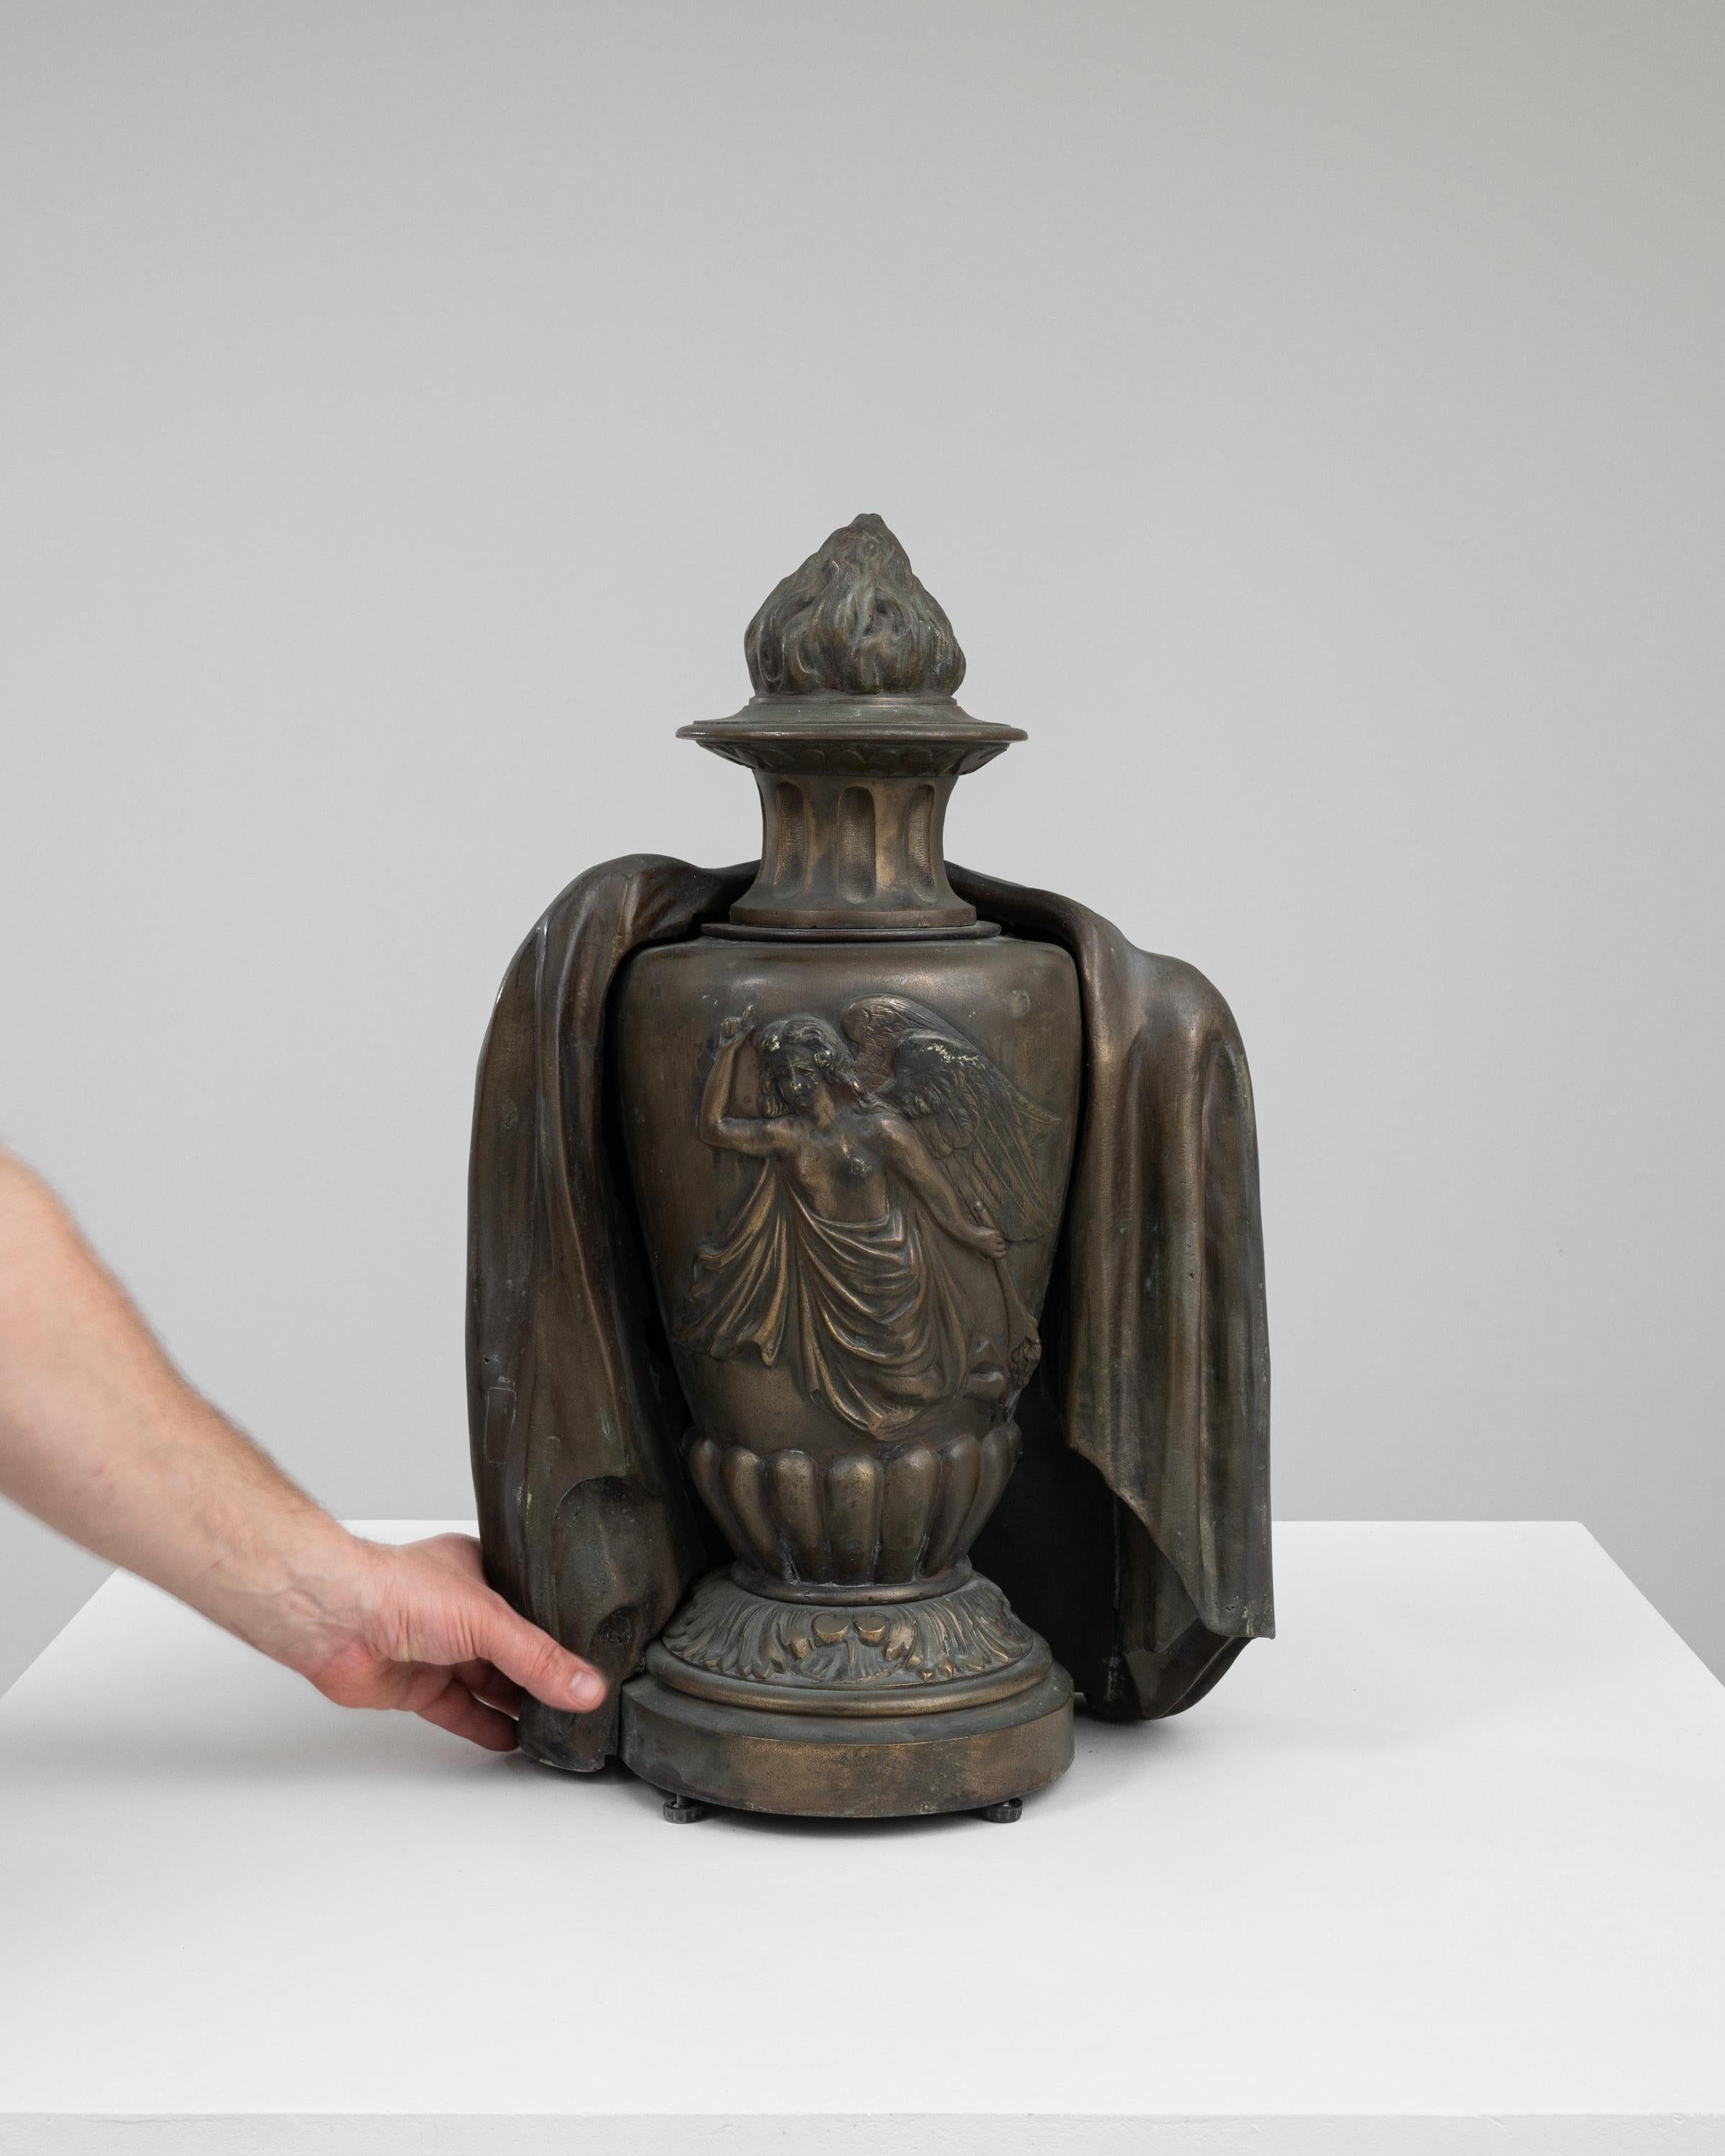 Cette captivante urne en bronze française des années 1900 est une relique exquise qui incarne l'art et la mystique de son époque. Drapée des plis gracieux d'une robe classique, l'urne est ornée de la figure sereine et sculptée d'un ange, apportant